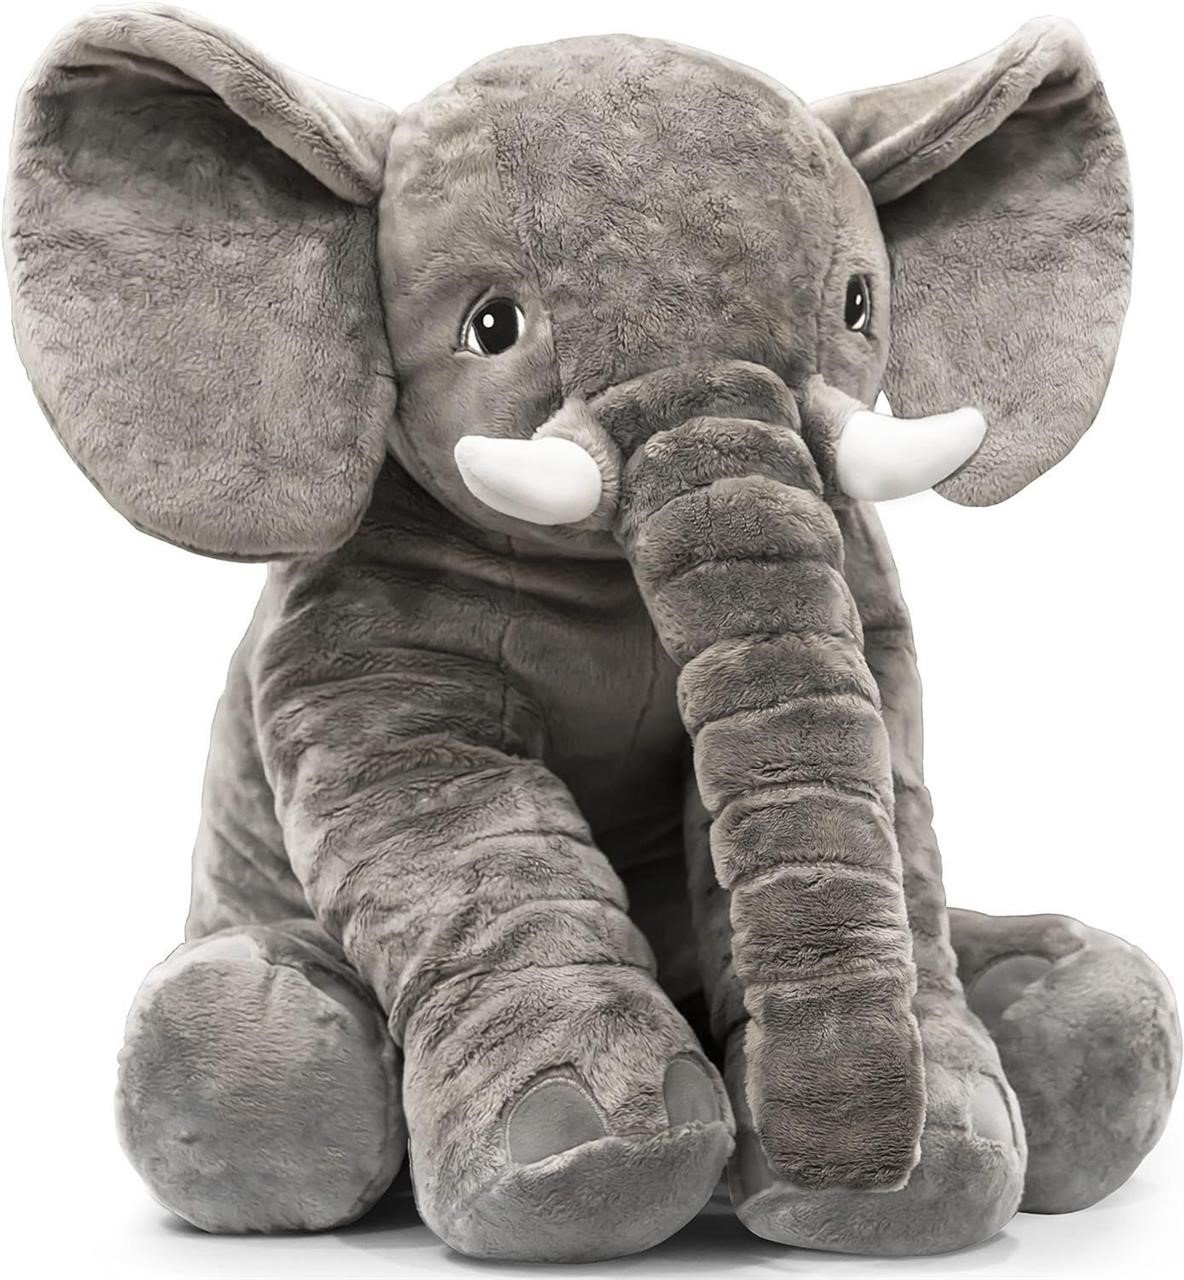 Super Soft Quality Large Plush Elephant